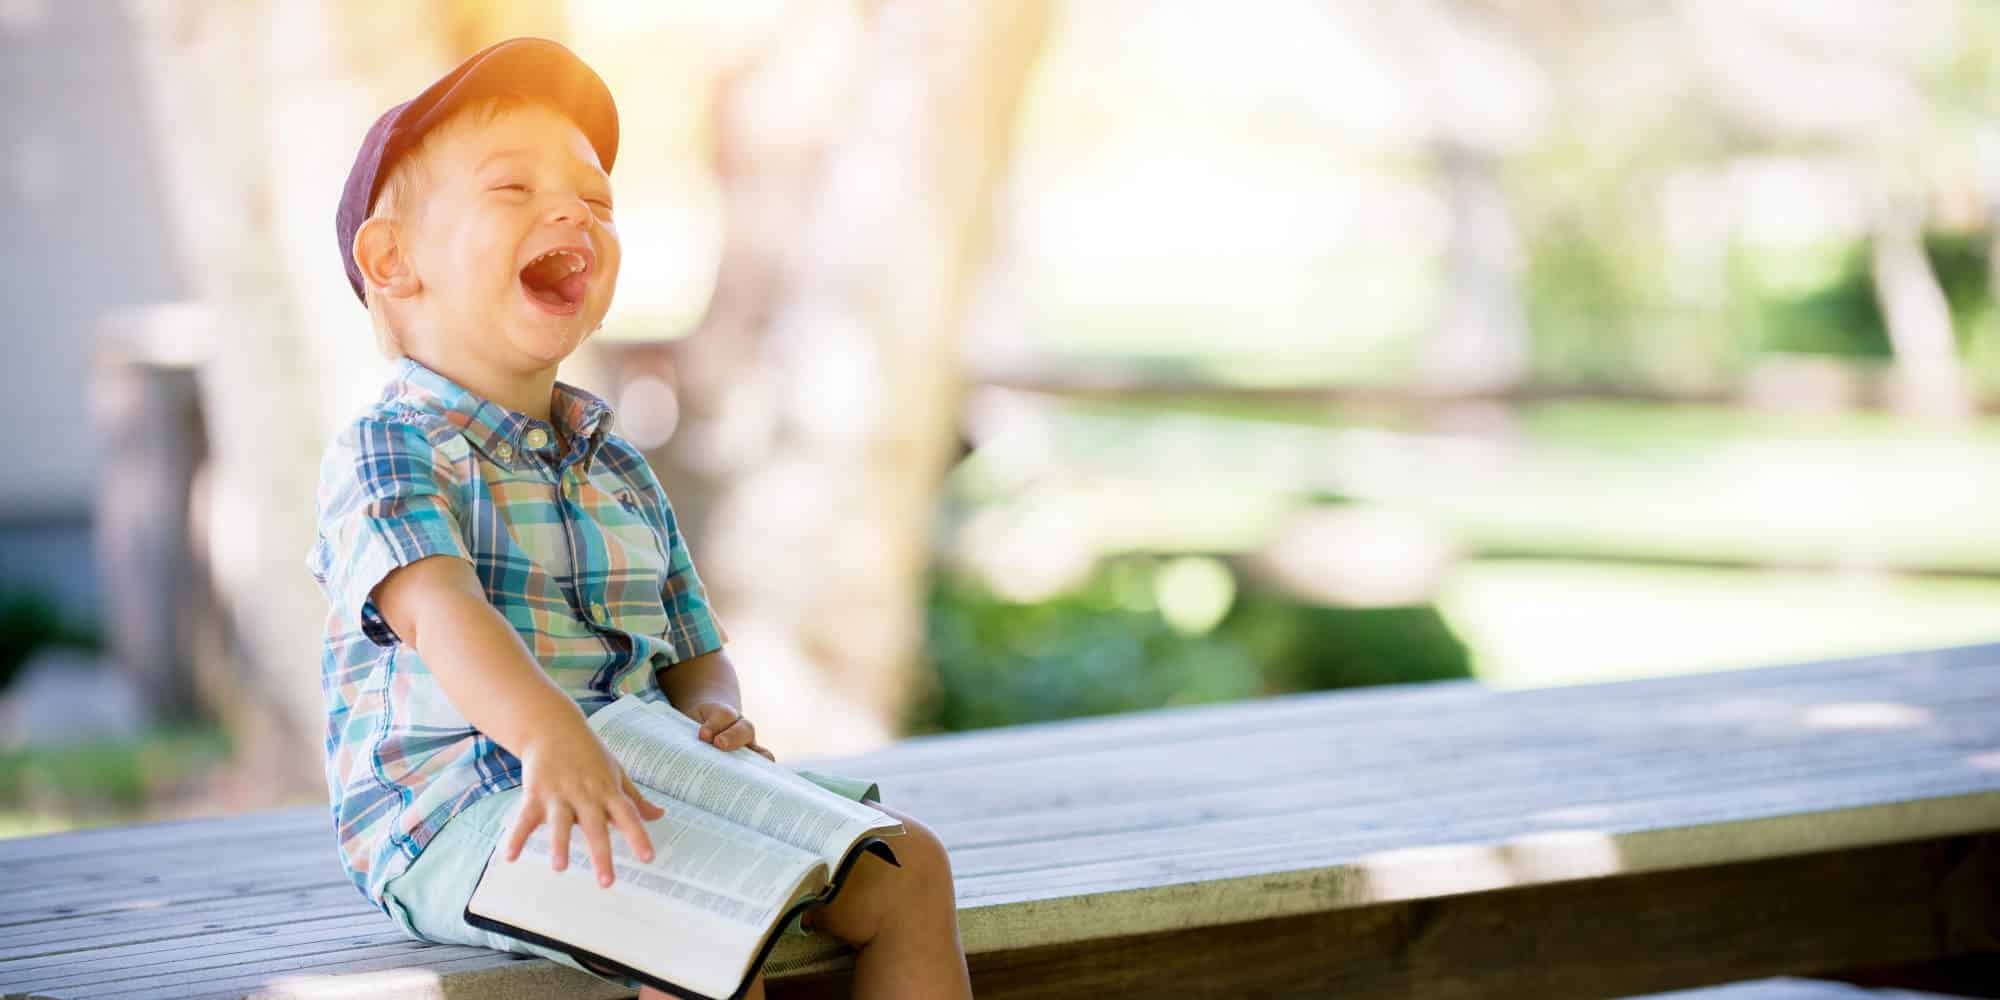 Η ευτυχία ζωγραφισμένη στο γελαστό πρόσωπο ενός παιδιού που κρατά ένα βιβλίο στο παγκάκι